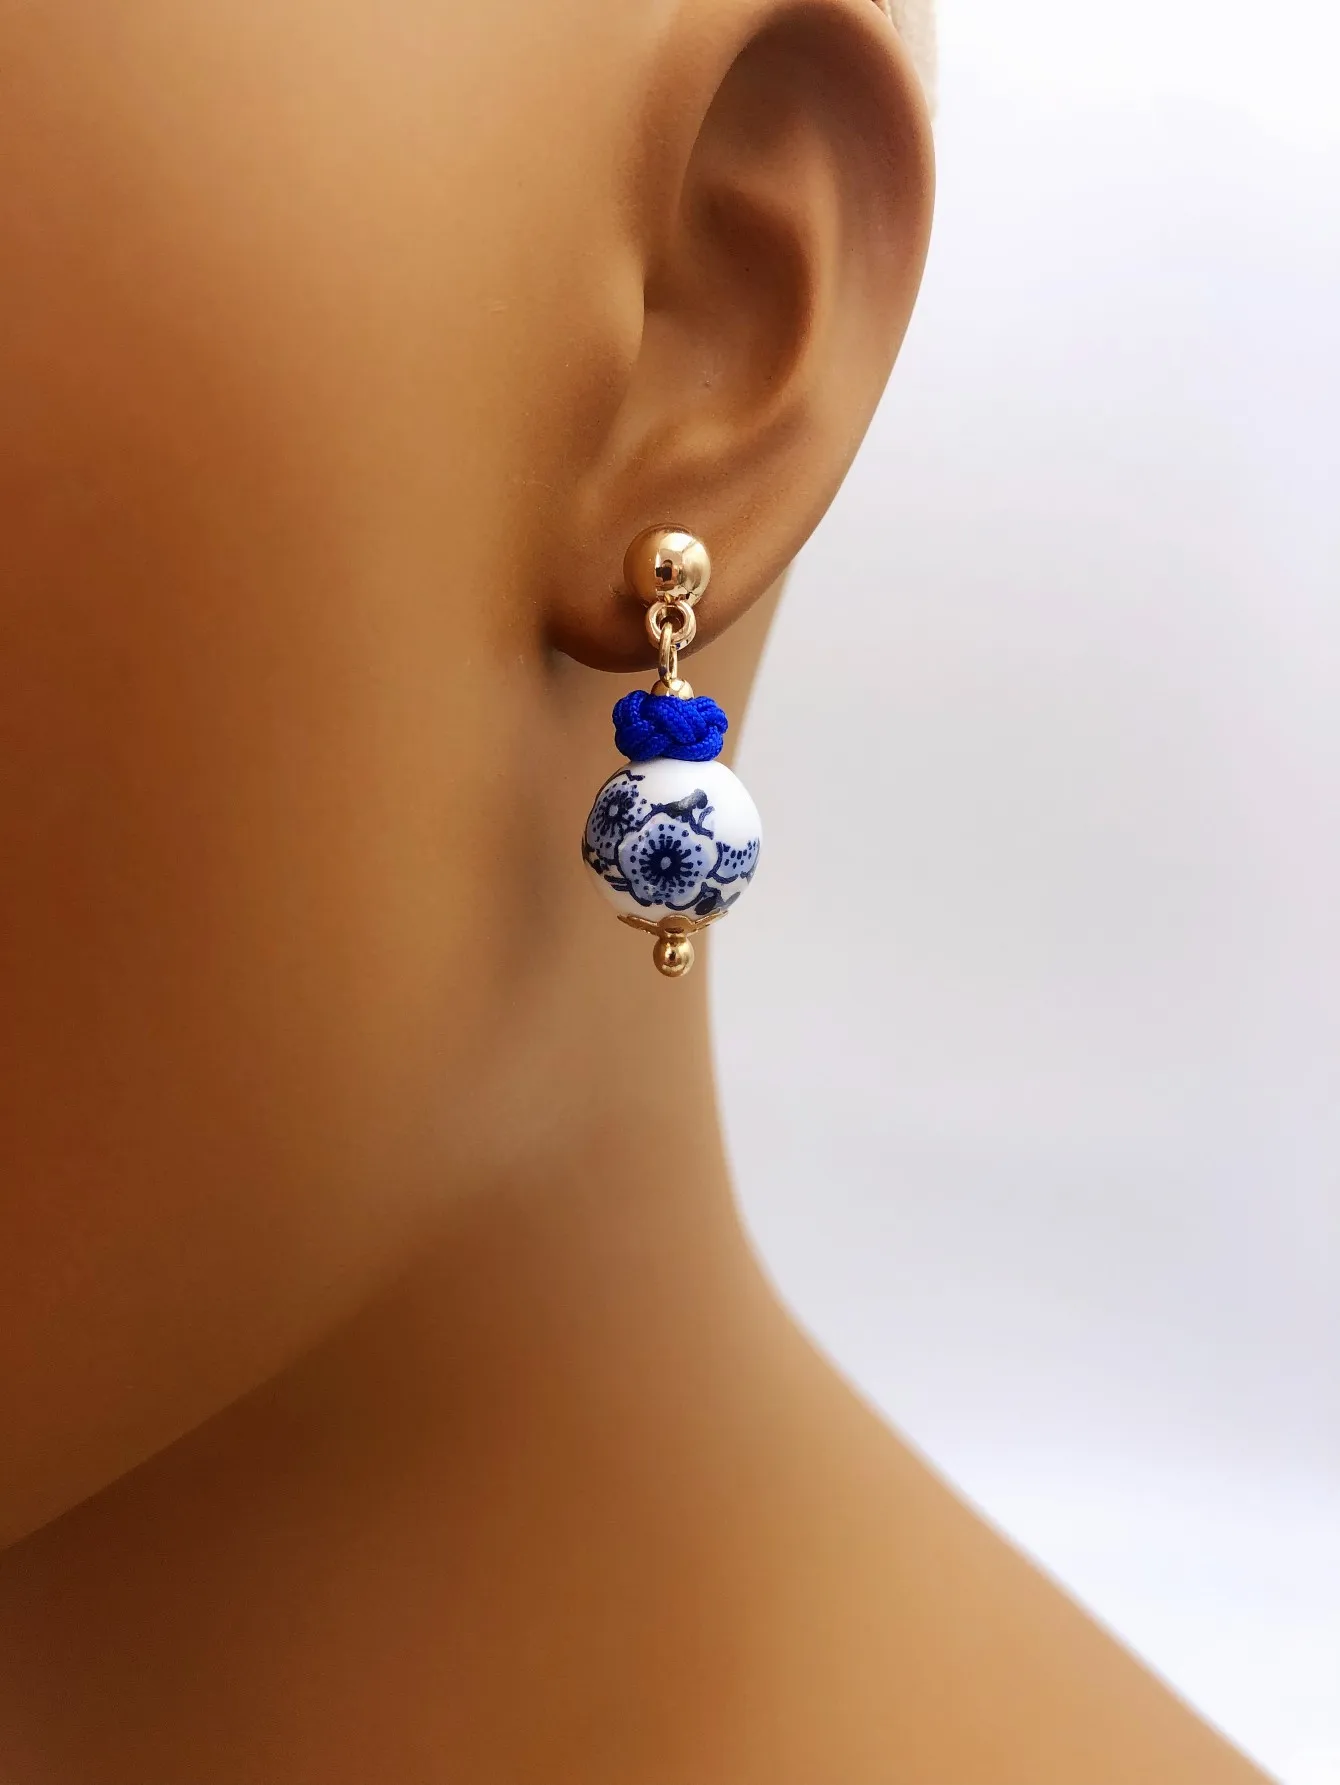 Čínské styl keramika náušnice modrá a bílý porcelán ucho hřeby ženy náušnice